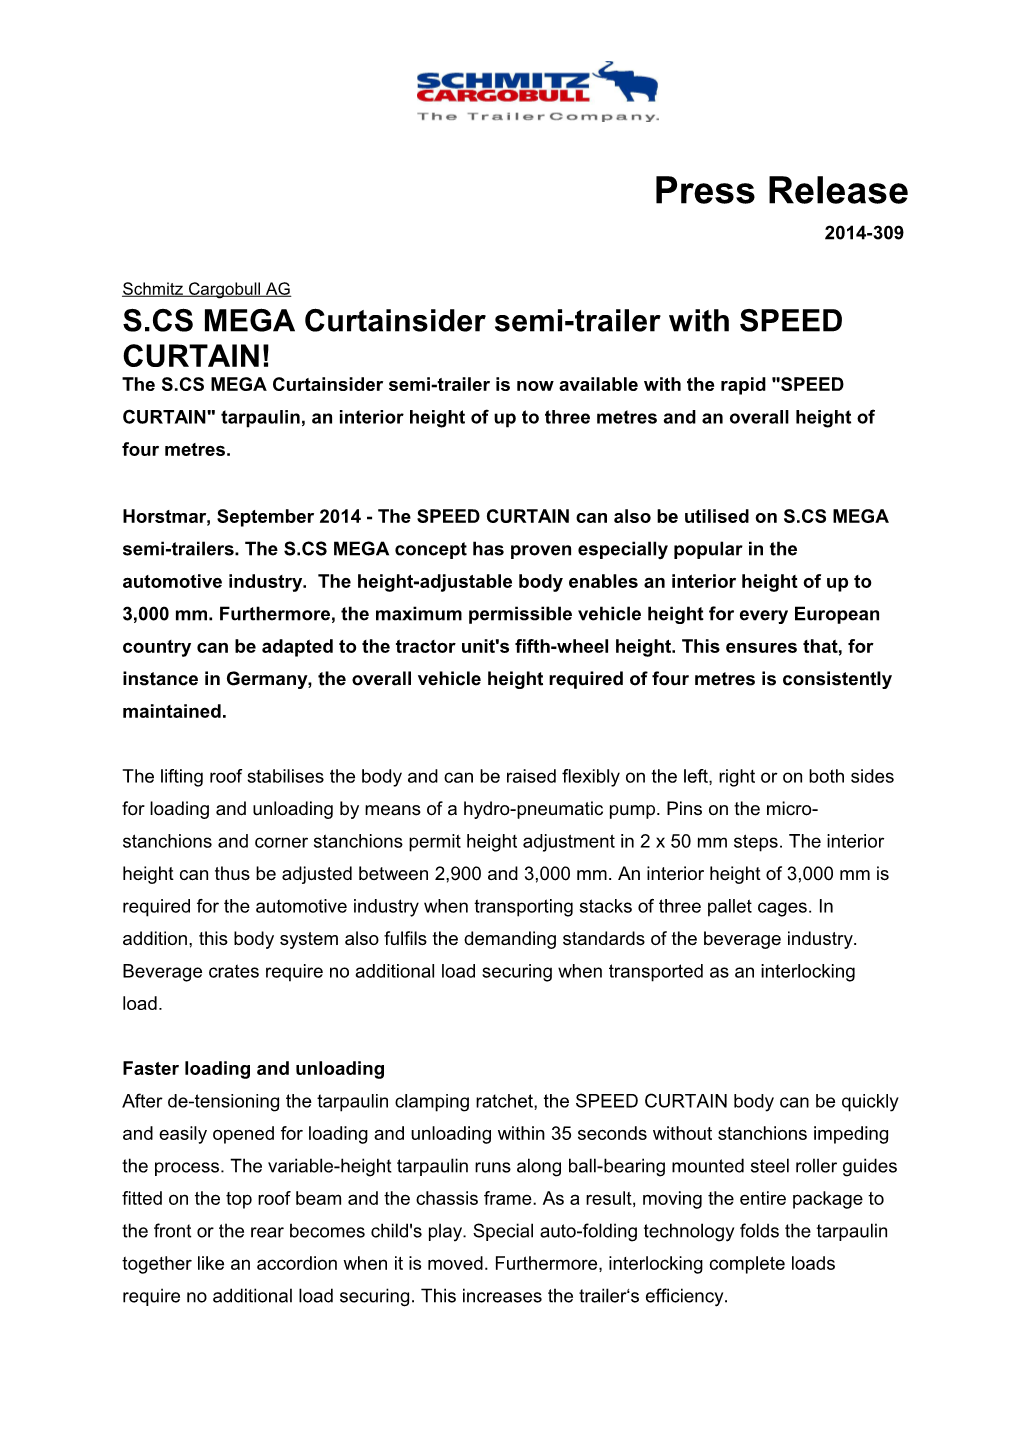 S.CS MEGA Curtainsider Semi-Trailer with SPEED CURTAIN!